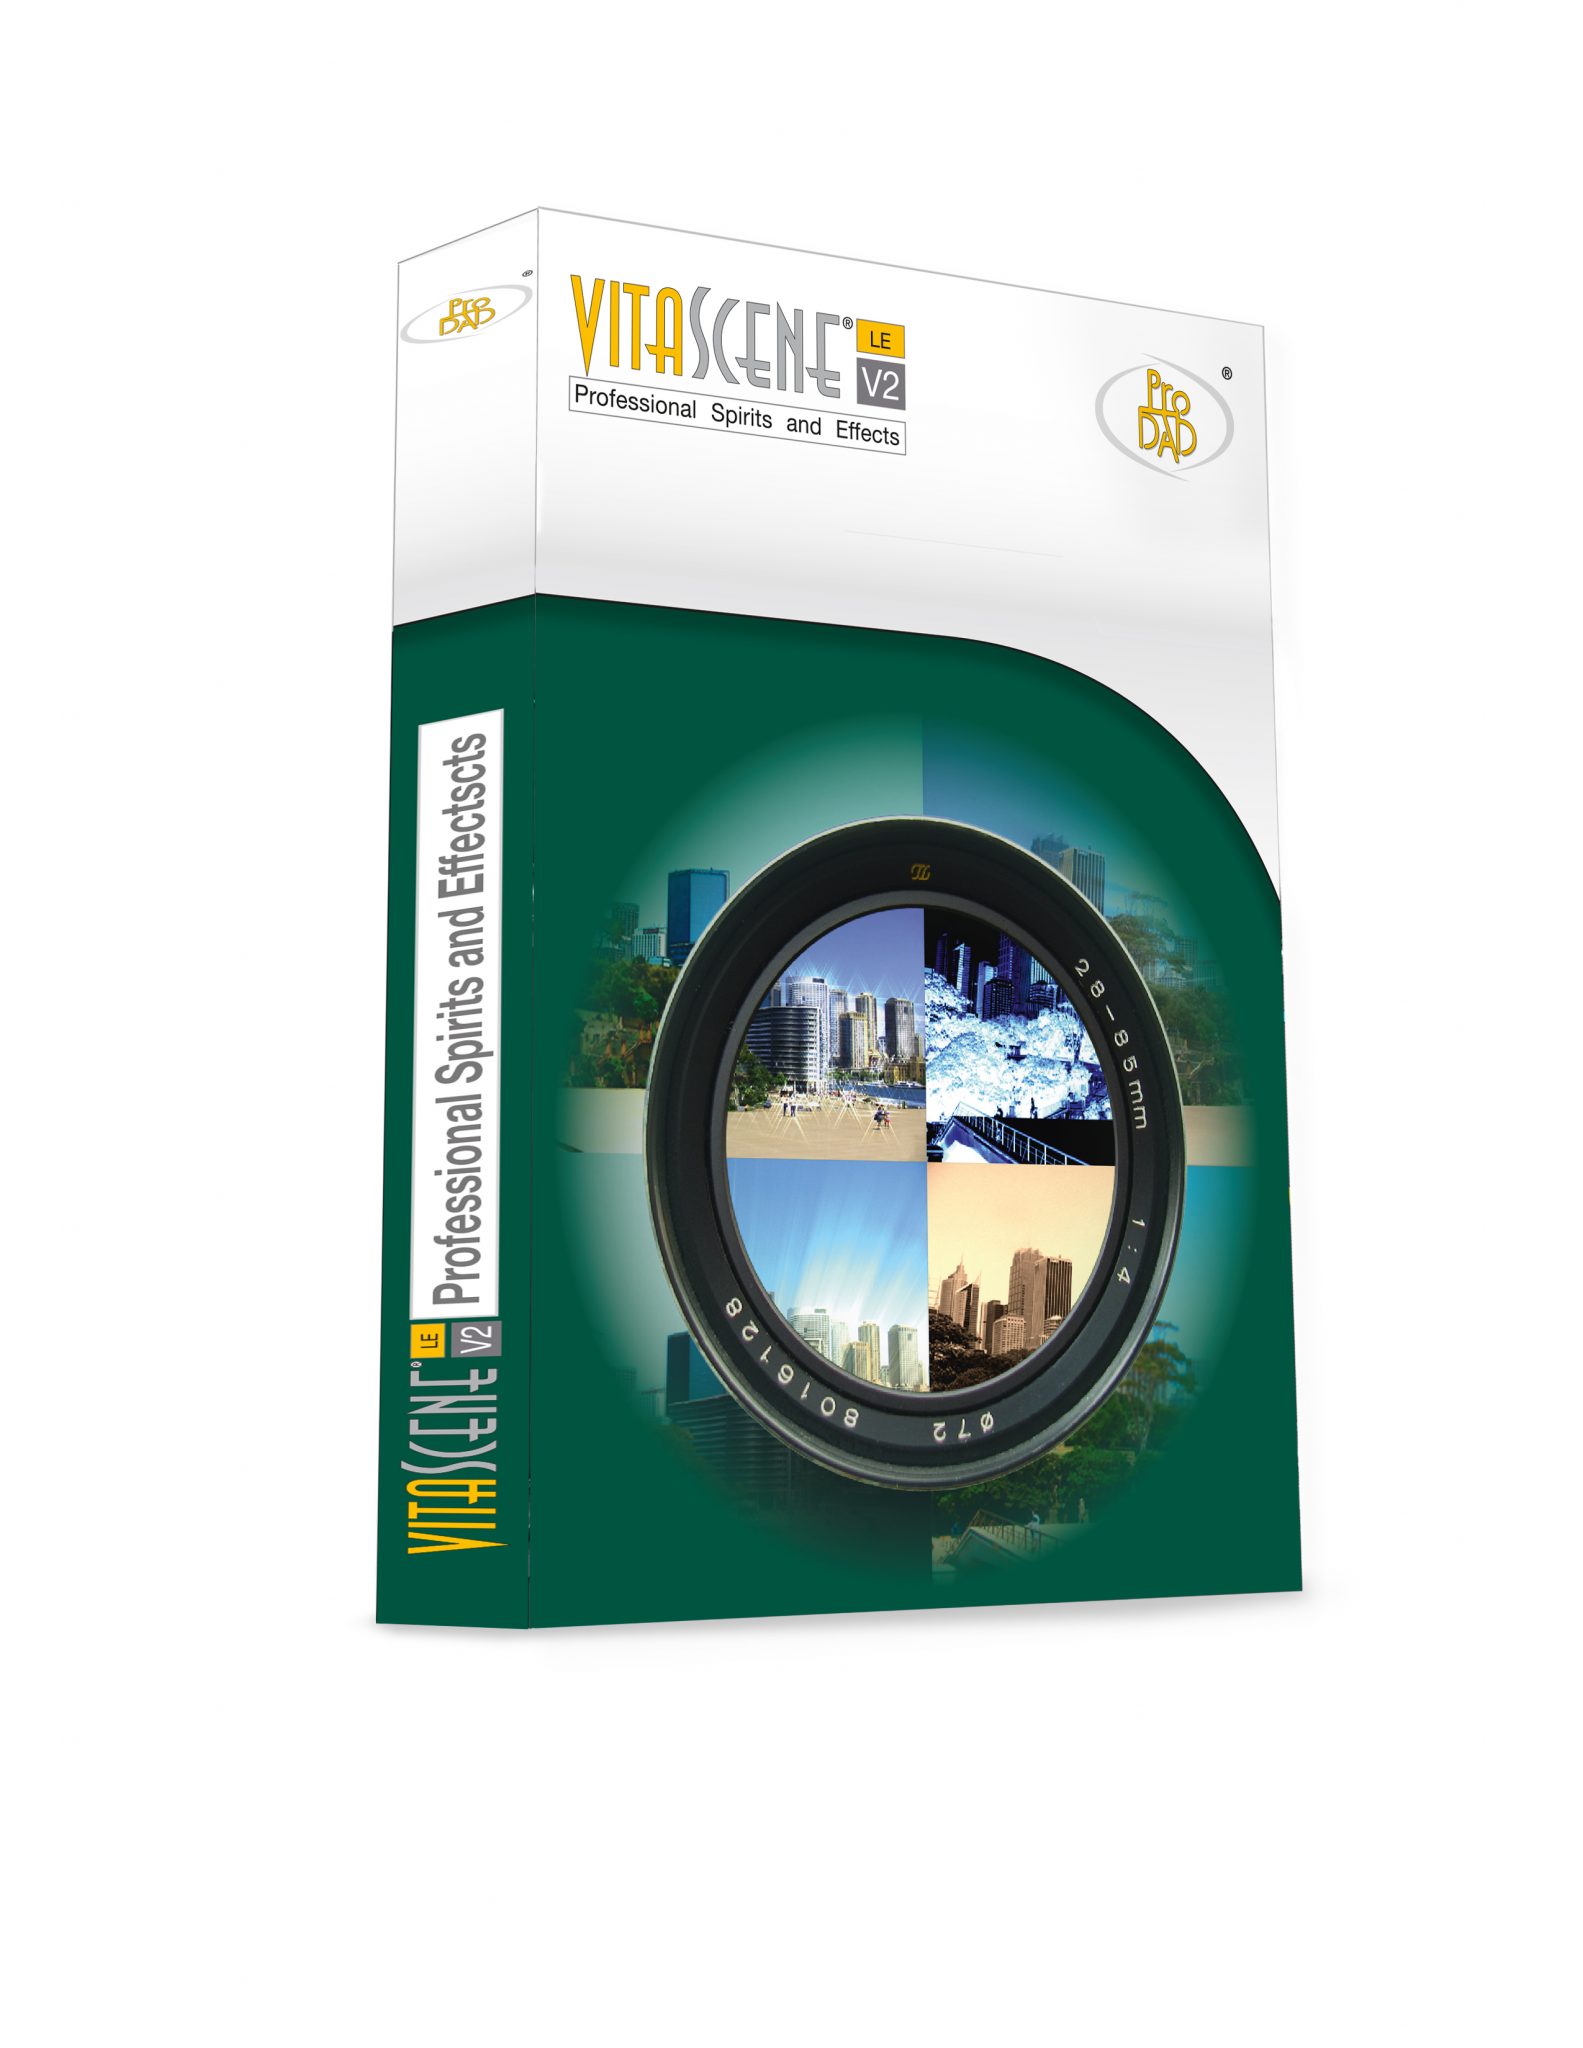 proDAD VitaScene 5.0.312 instal the new